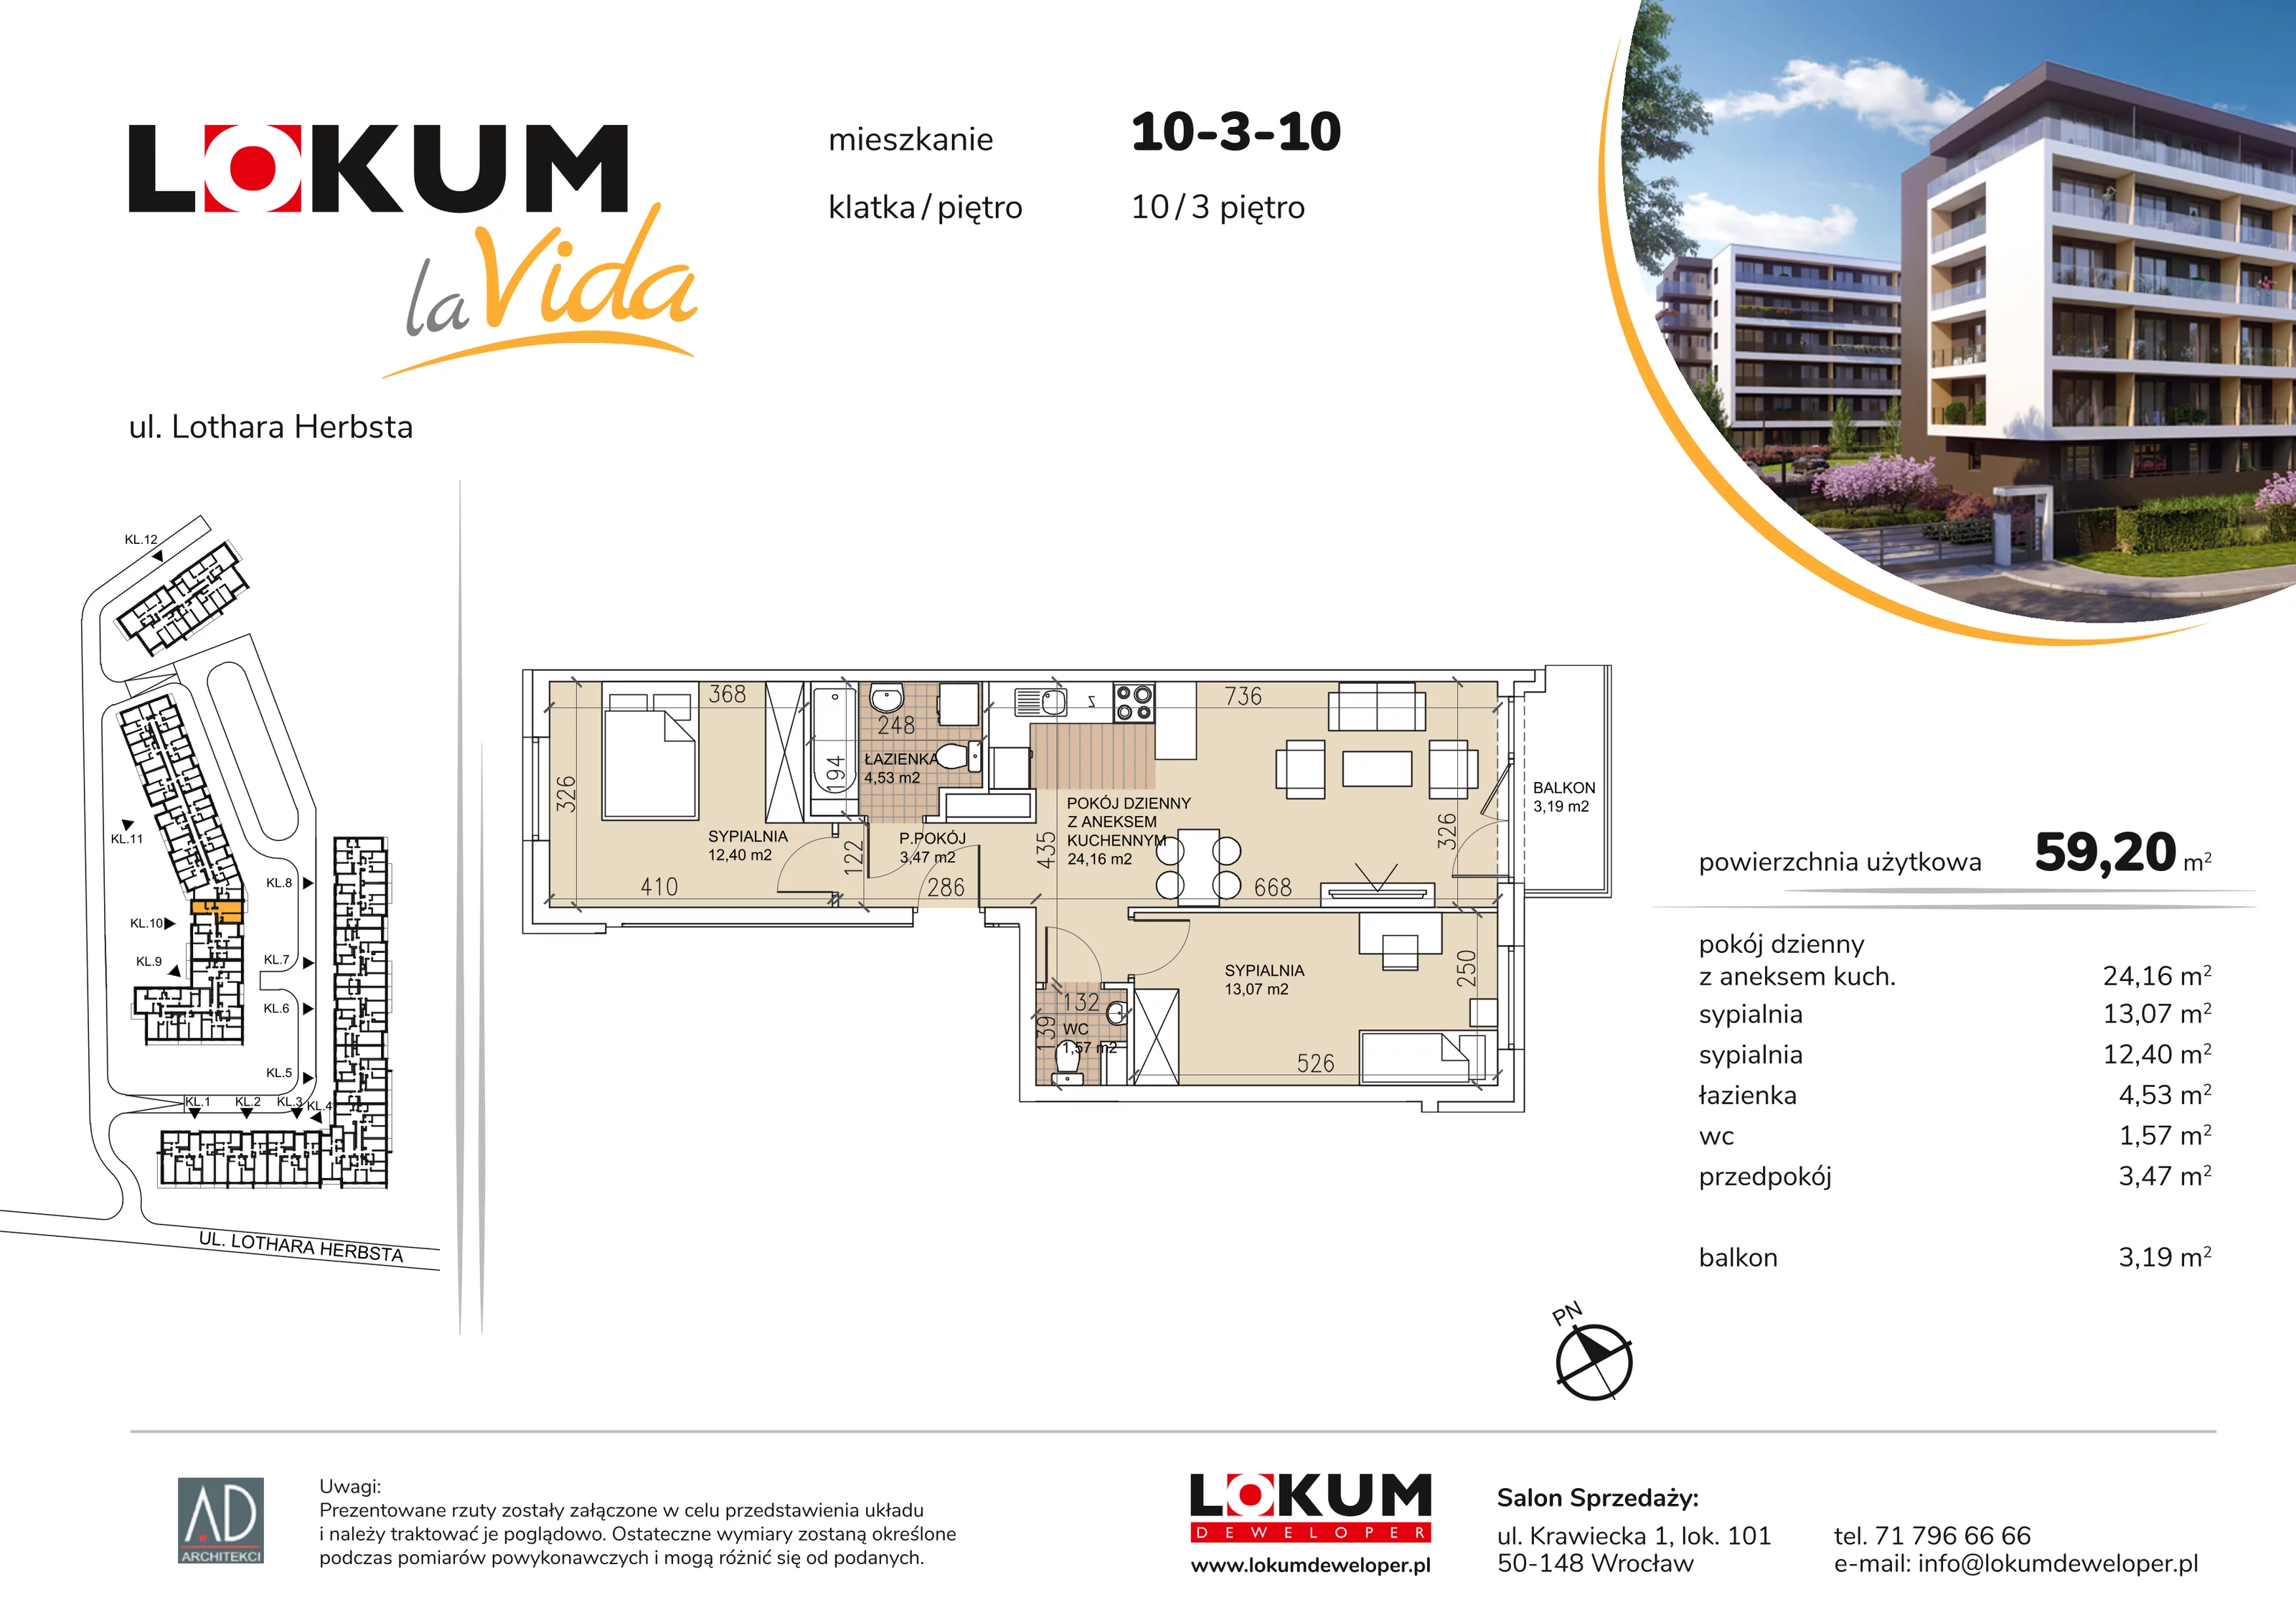 Mieszkanie 59,20 m², piętro 3, oferta nr 10-3-10, Lokum la Vida, Wrocław, Sołtysowice, ul. Lothara Herbsta